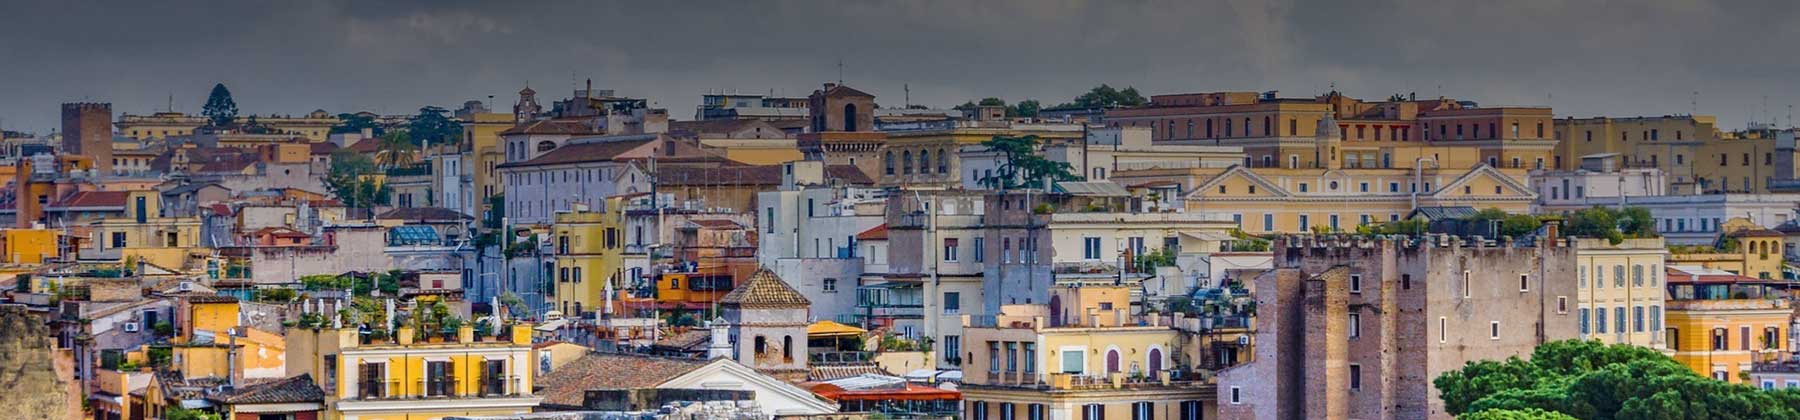 Foto panoramica del quartiere Monti a Roma centro in una bella giornata di sole